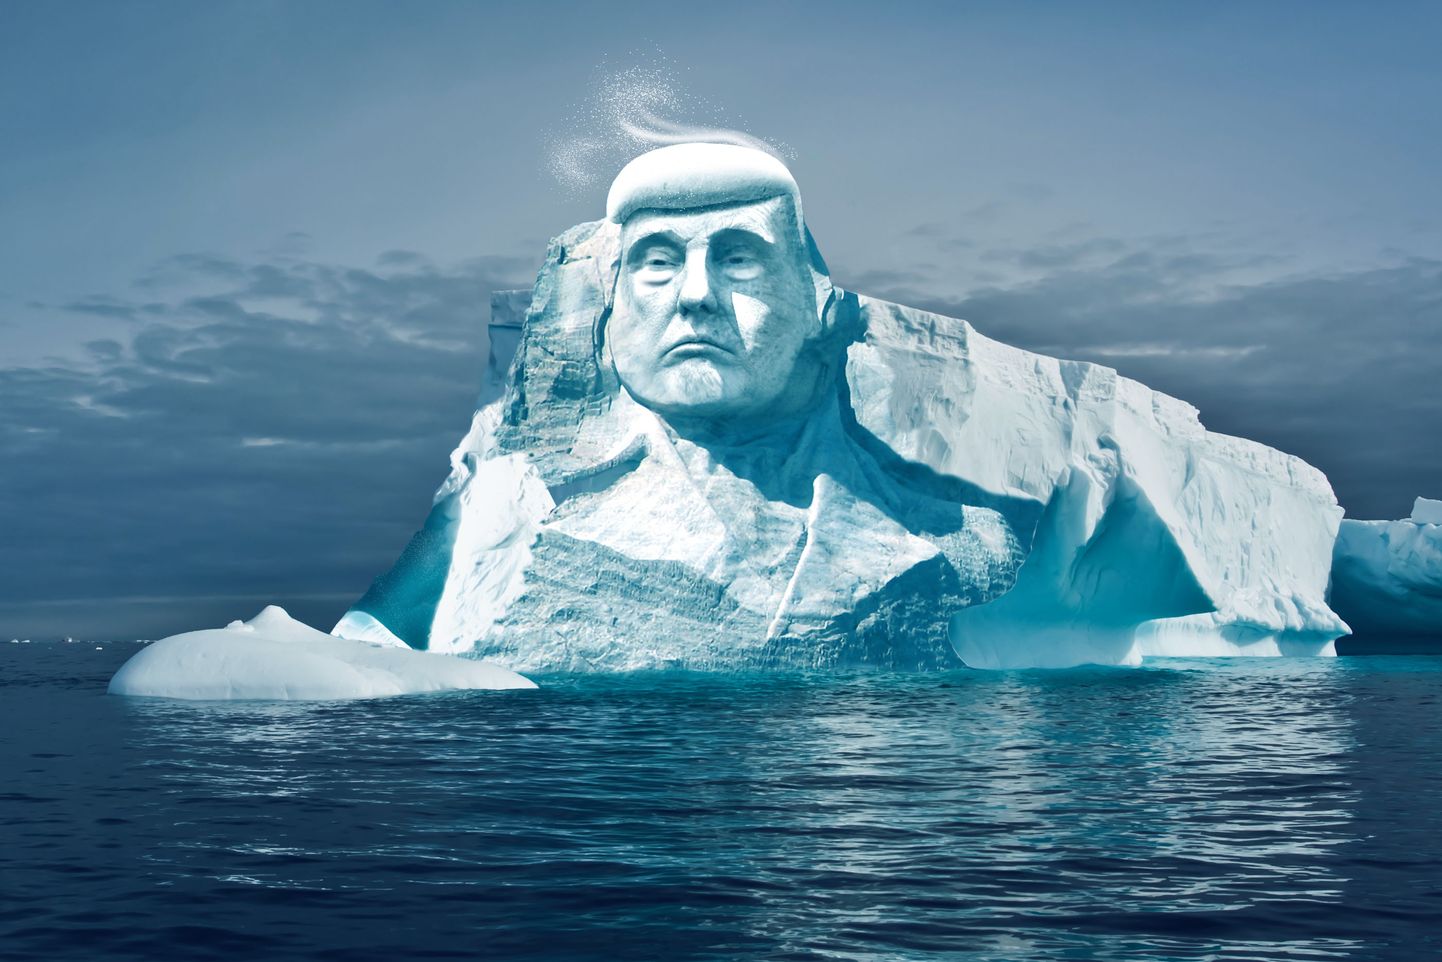 Ледяная голова Трампа должна стать наглядным примером изменения климата на Земле.